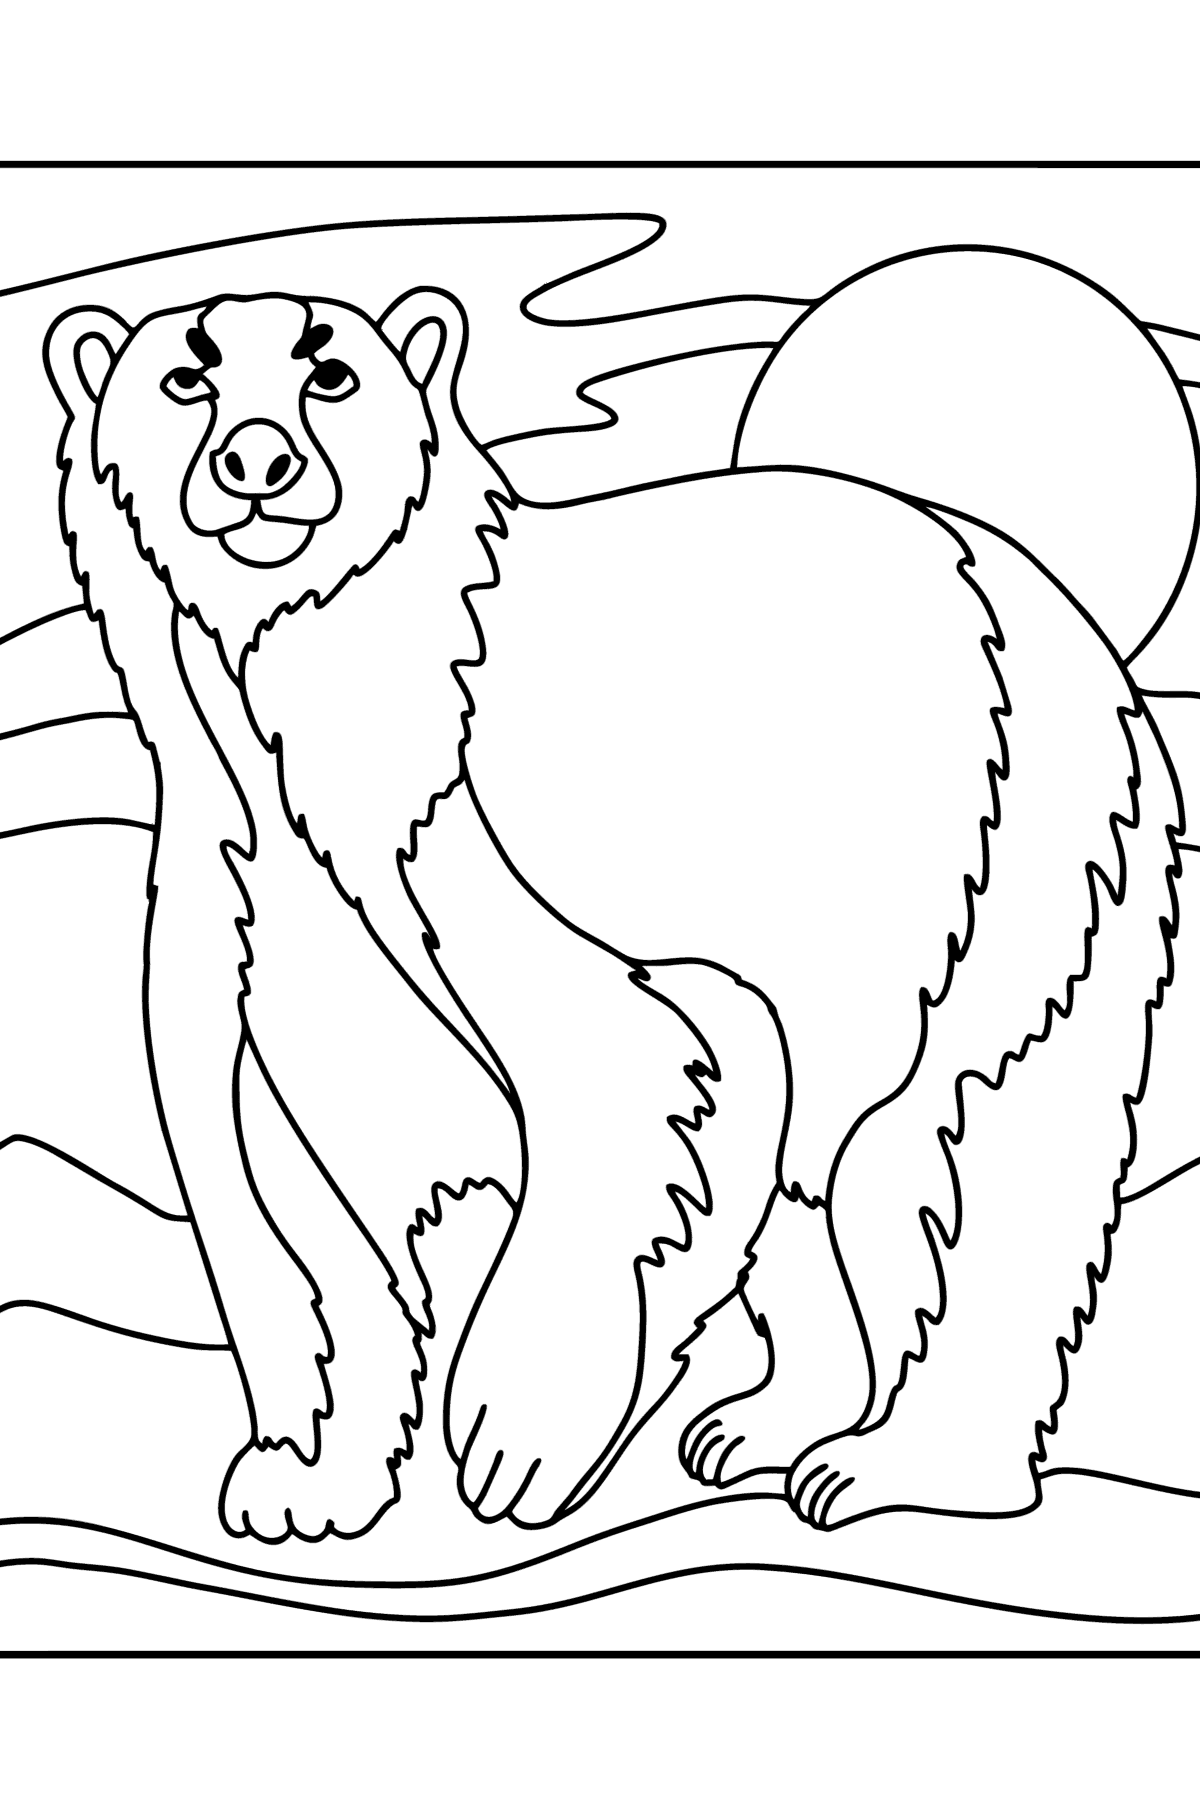 Desenho de Urso polar para colorir - Imagens para Colorir para Crianças